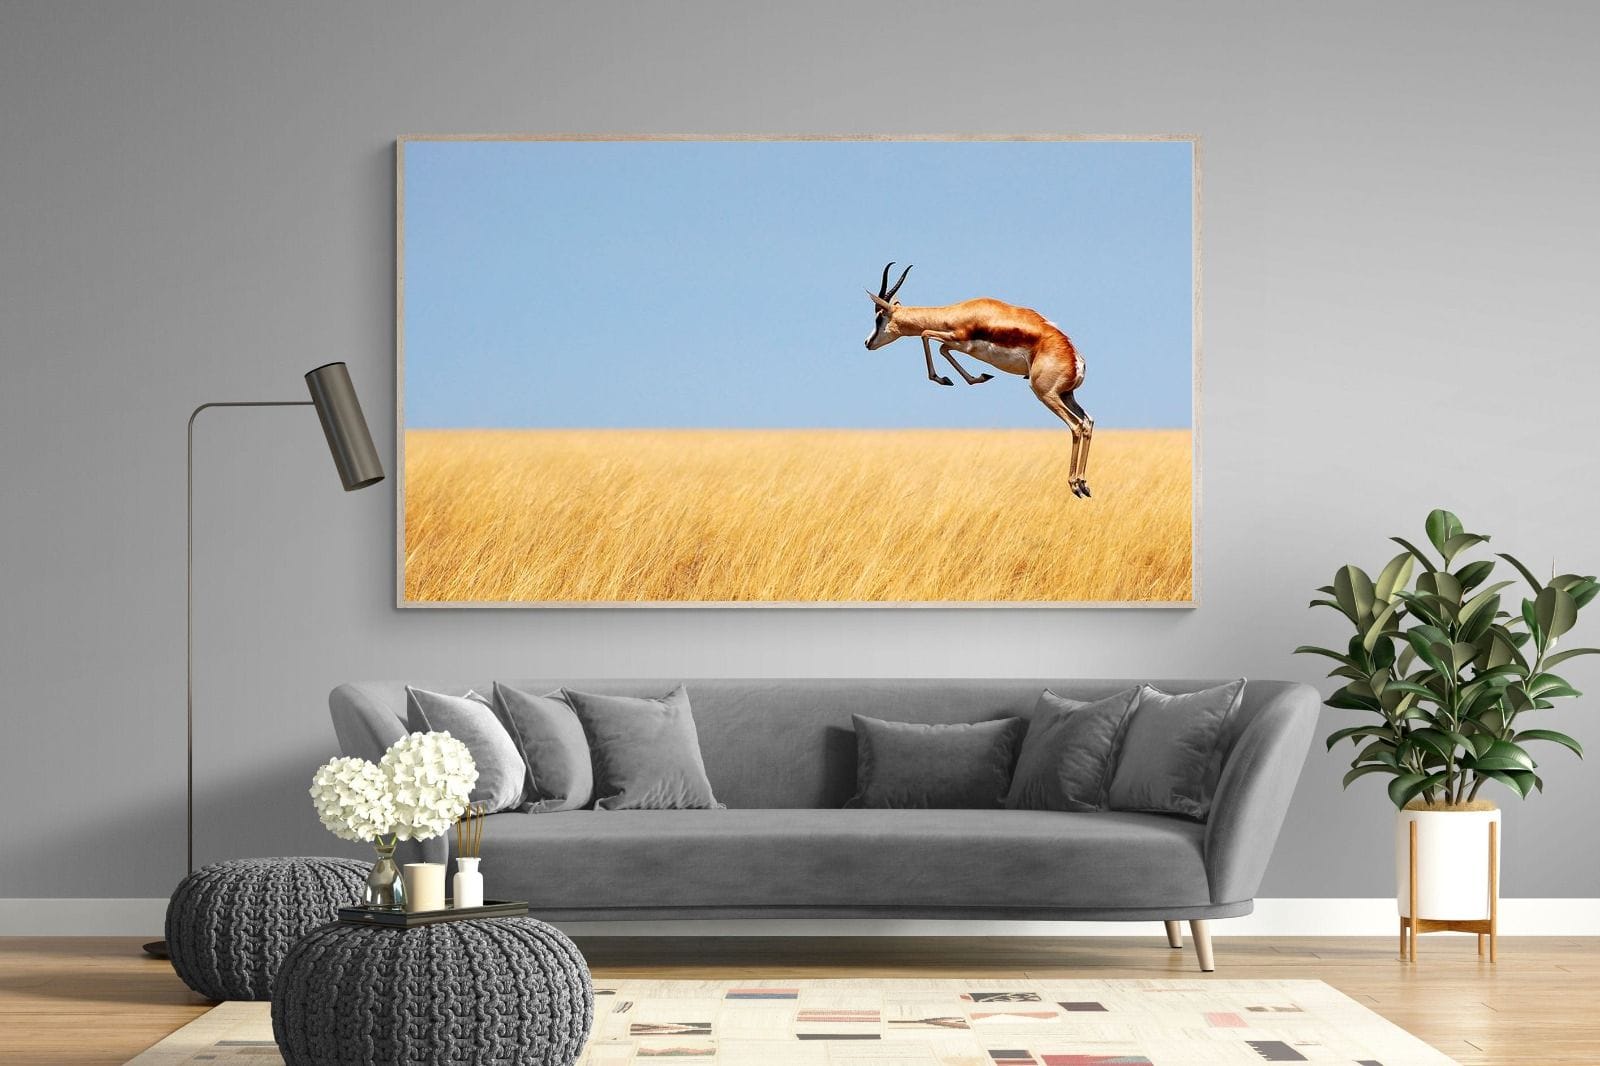 Springy-Wall_Art-220 x 130cm-Mounted Canvas-Wood-Pixalot